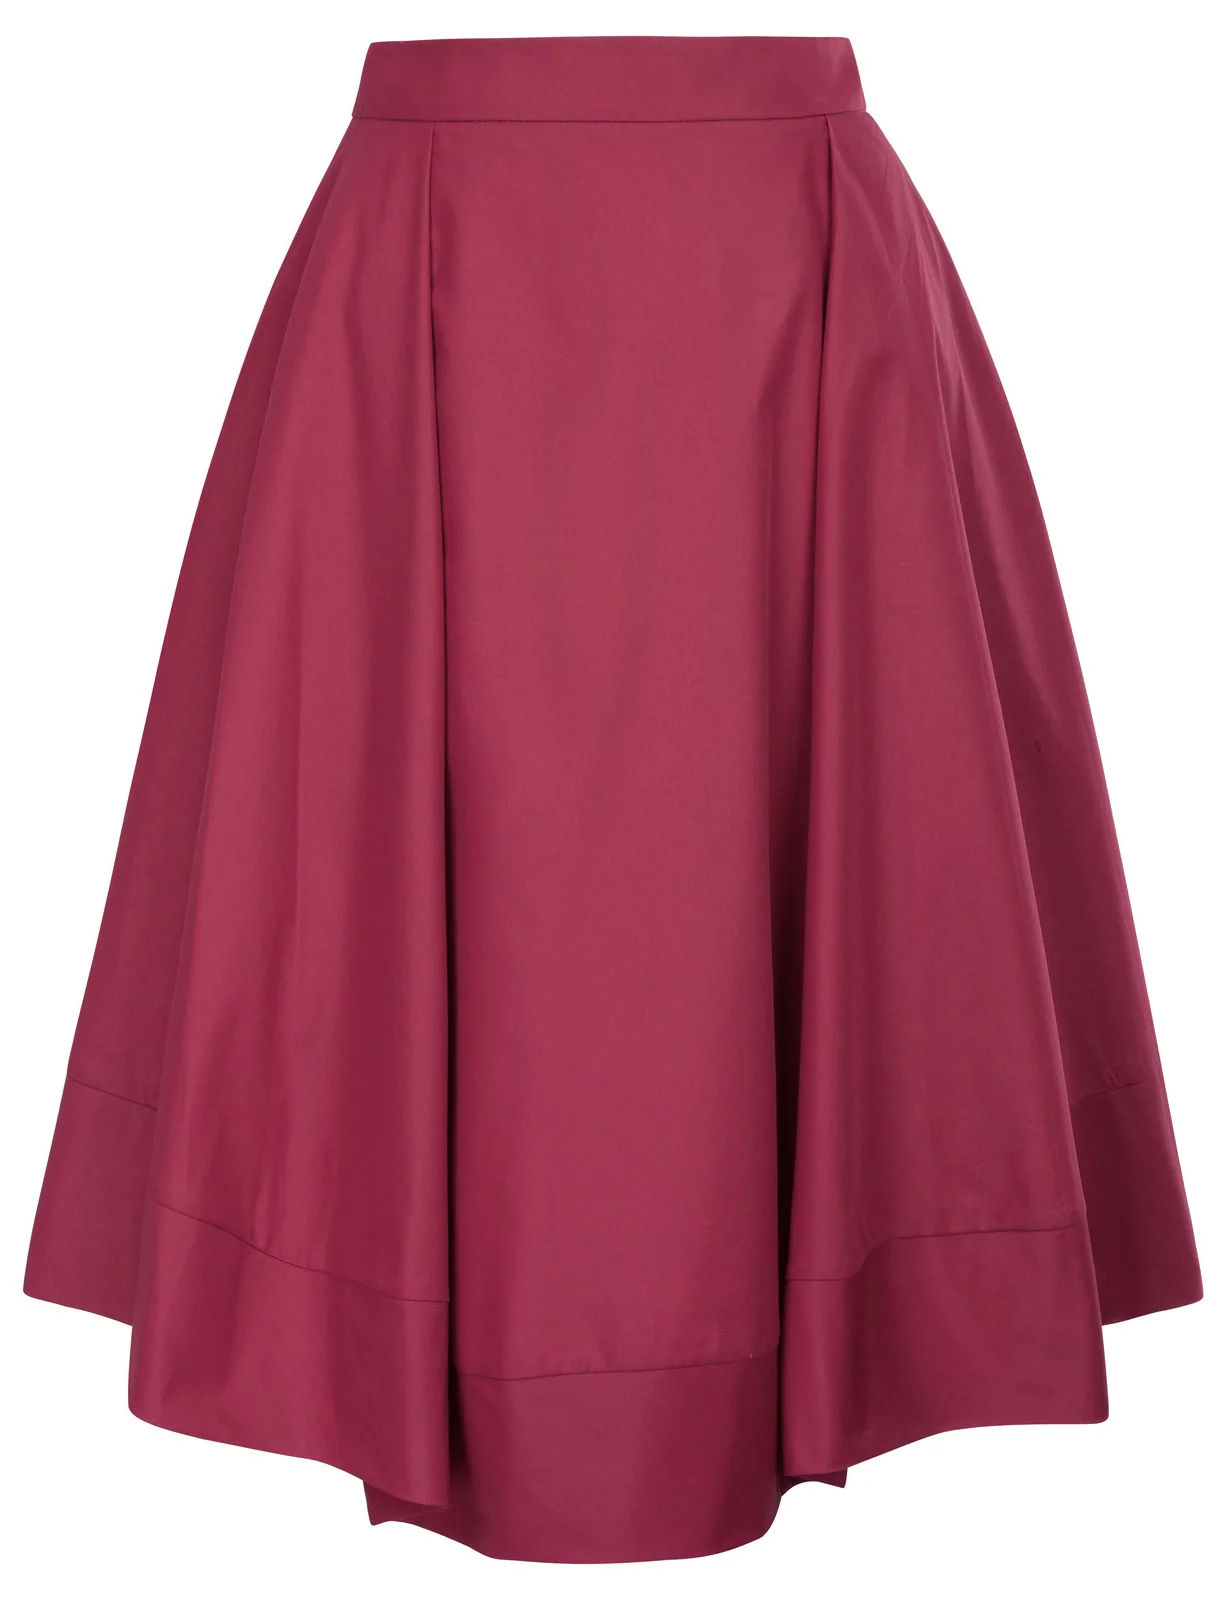 Наличии красные юбки женские платье корейская мода Высокая талия flared-линии 90 s Расклешенная юбка с карманами jupe taille haute